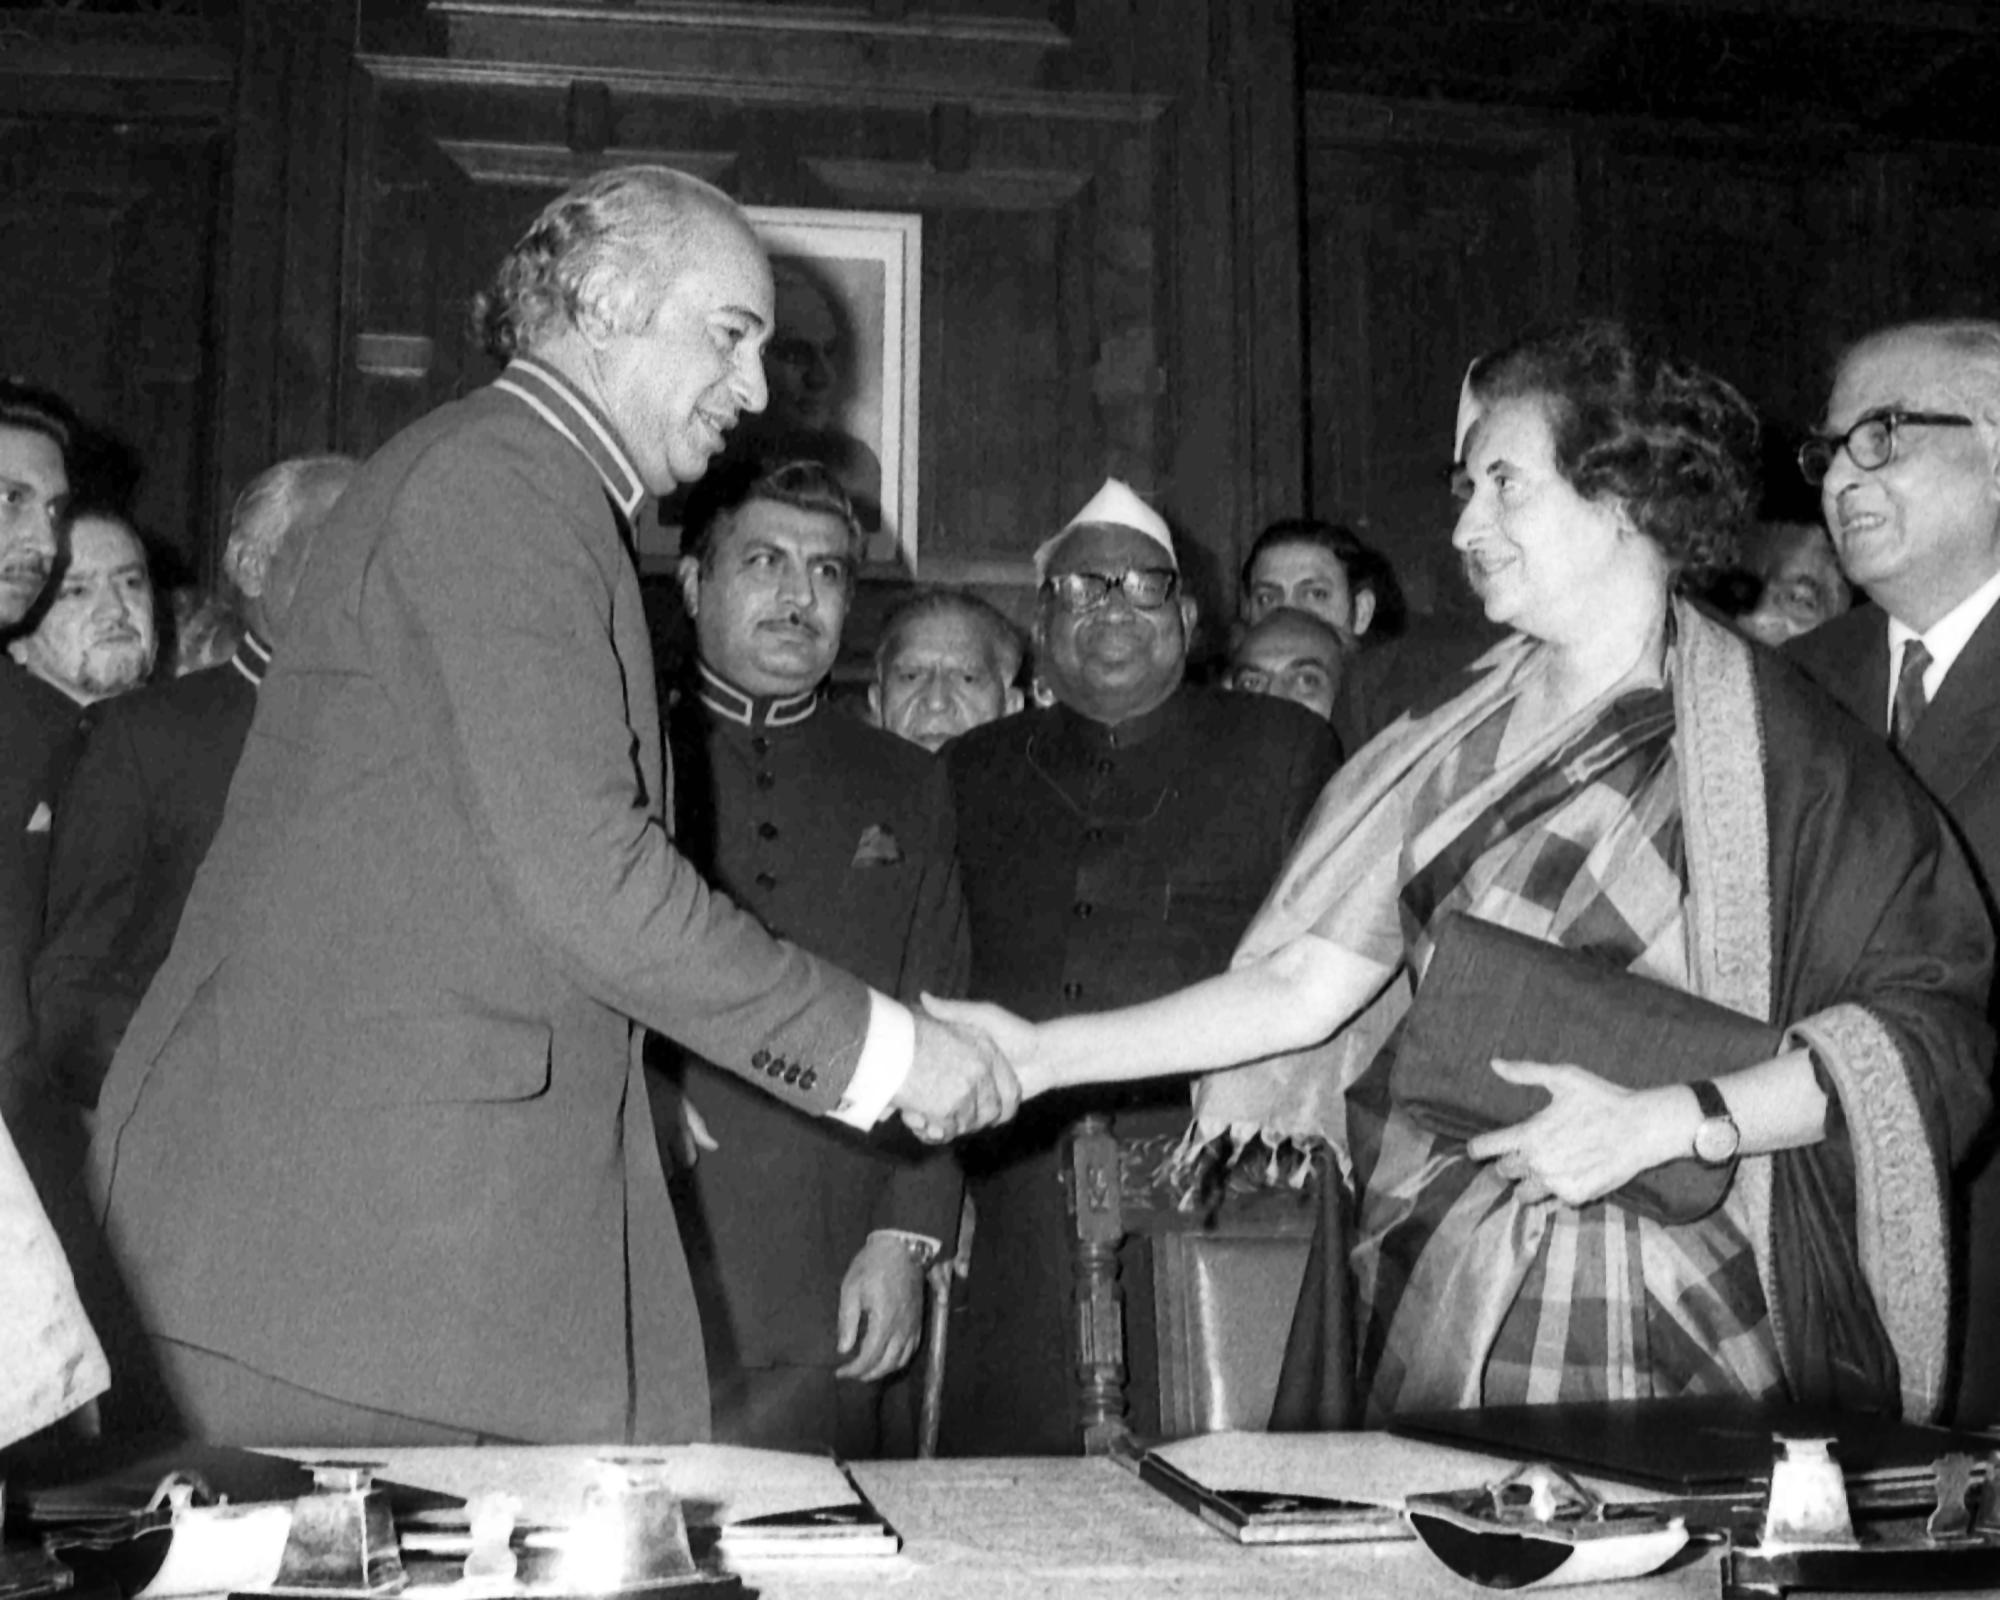 ARQUIVO - A primeira-ministra indiana Indira Gandhi, à direita, e o presidente do Paquistão, Zulfikar Ali Bhutto, apertam as mãos após assinatura e acordo na Mansão do Governador, em Simla, na Índia, em 28 de junho de 1972. Após vários dias de negociações, o acordo prevê a retirada de forças de suas fronteiras e renúncia ao uso da força. (Foto/Arquivo AP)